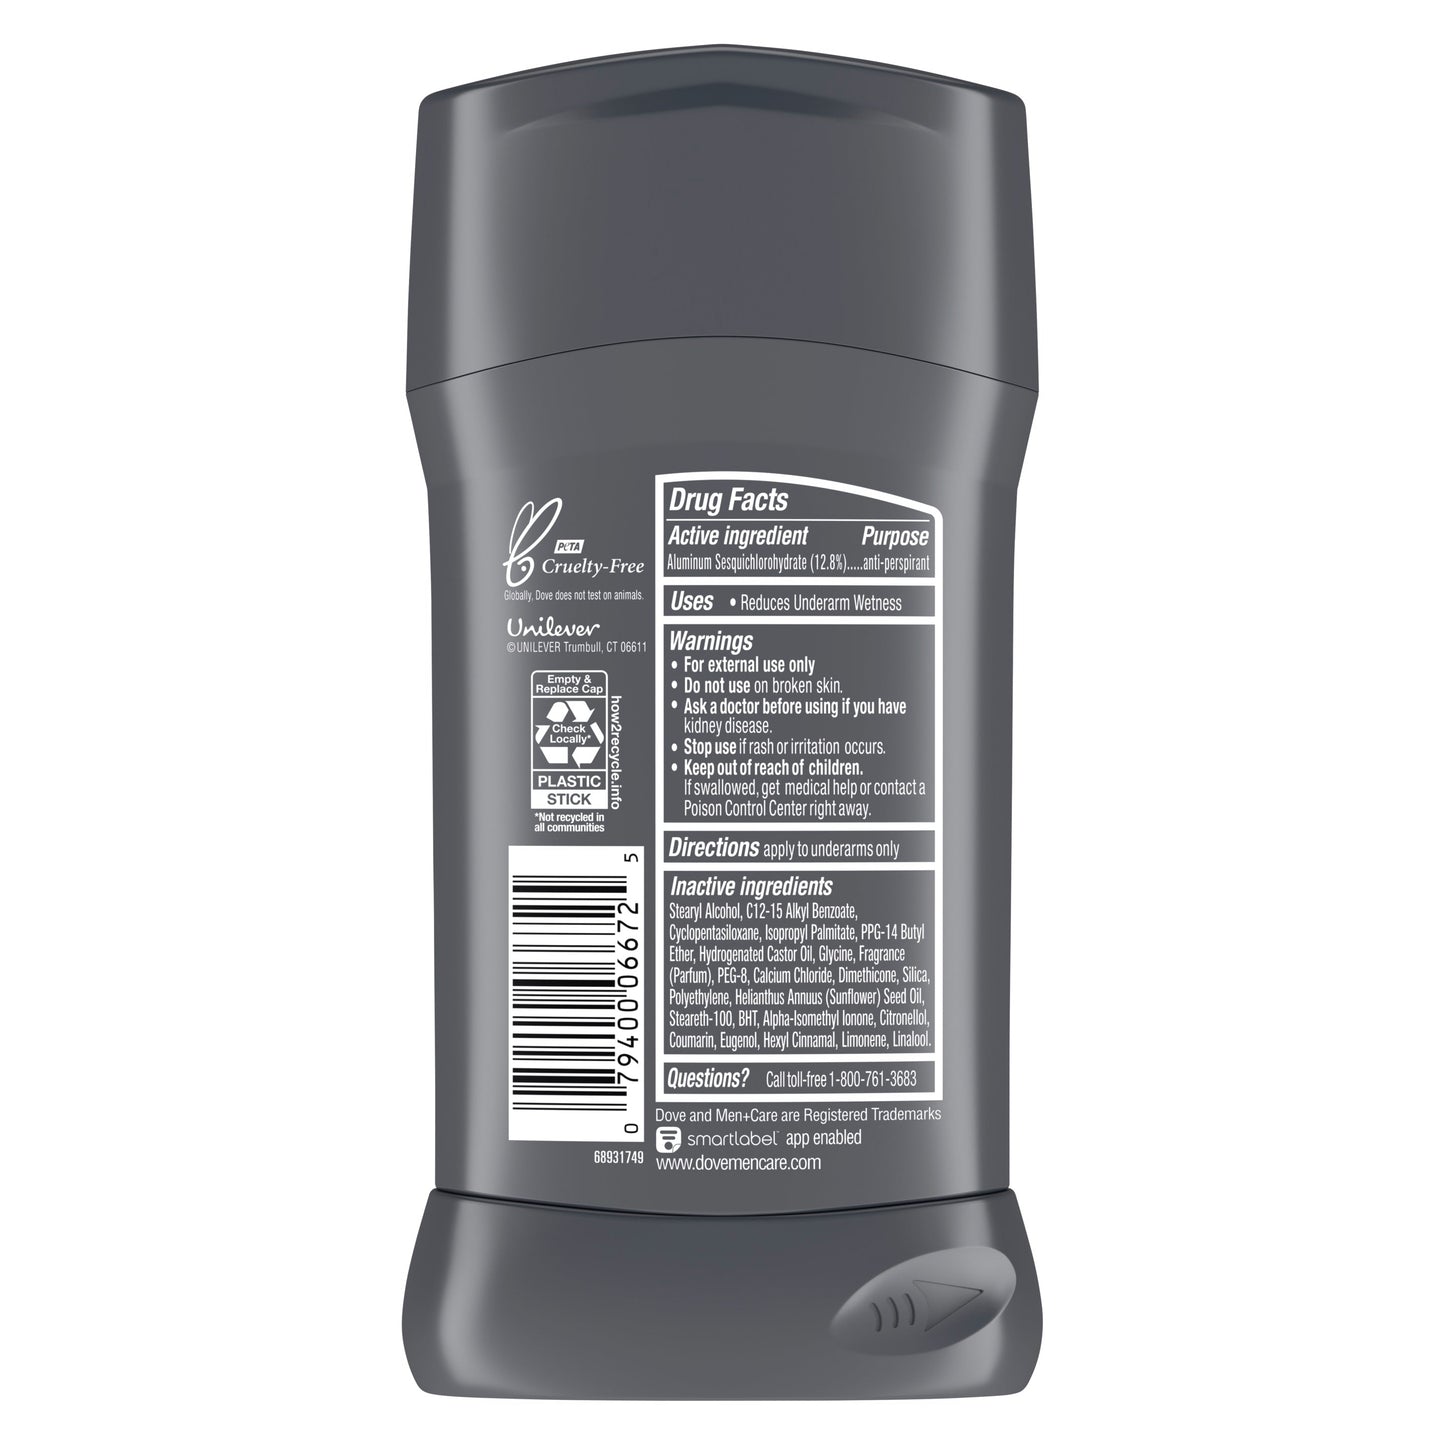 Dove Men plus Care Antiperspirant Deodorant, Extra Fresh  2.7 oz.